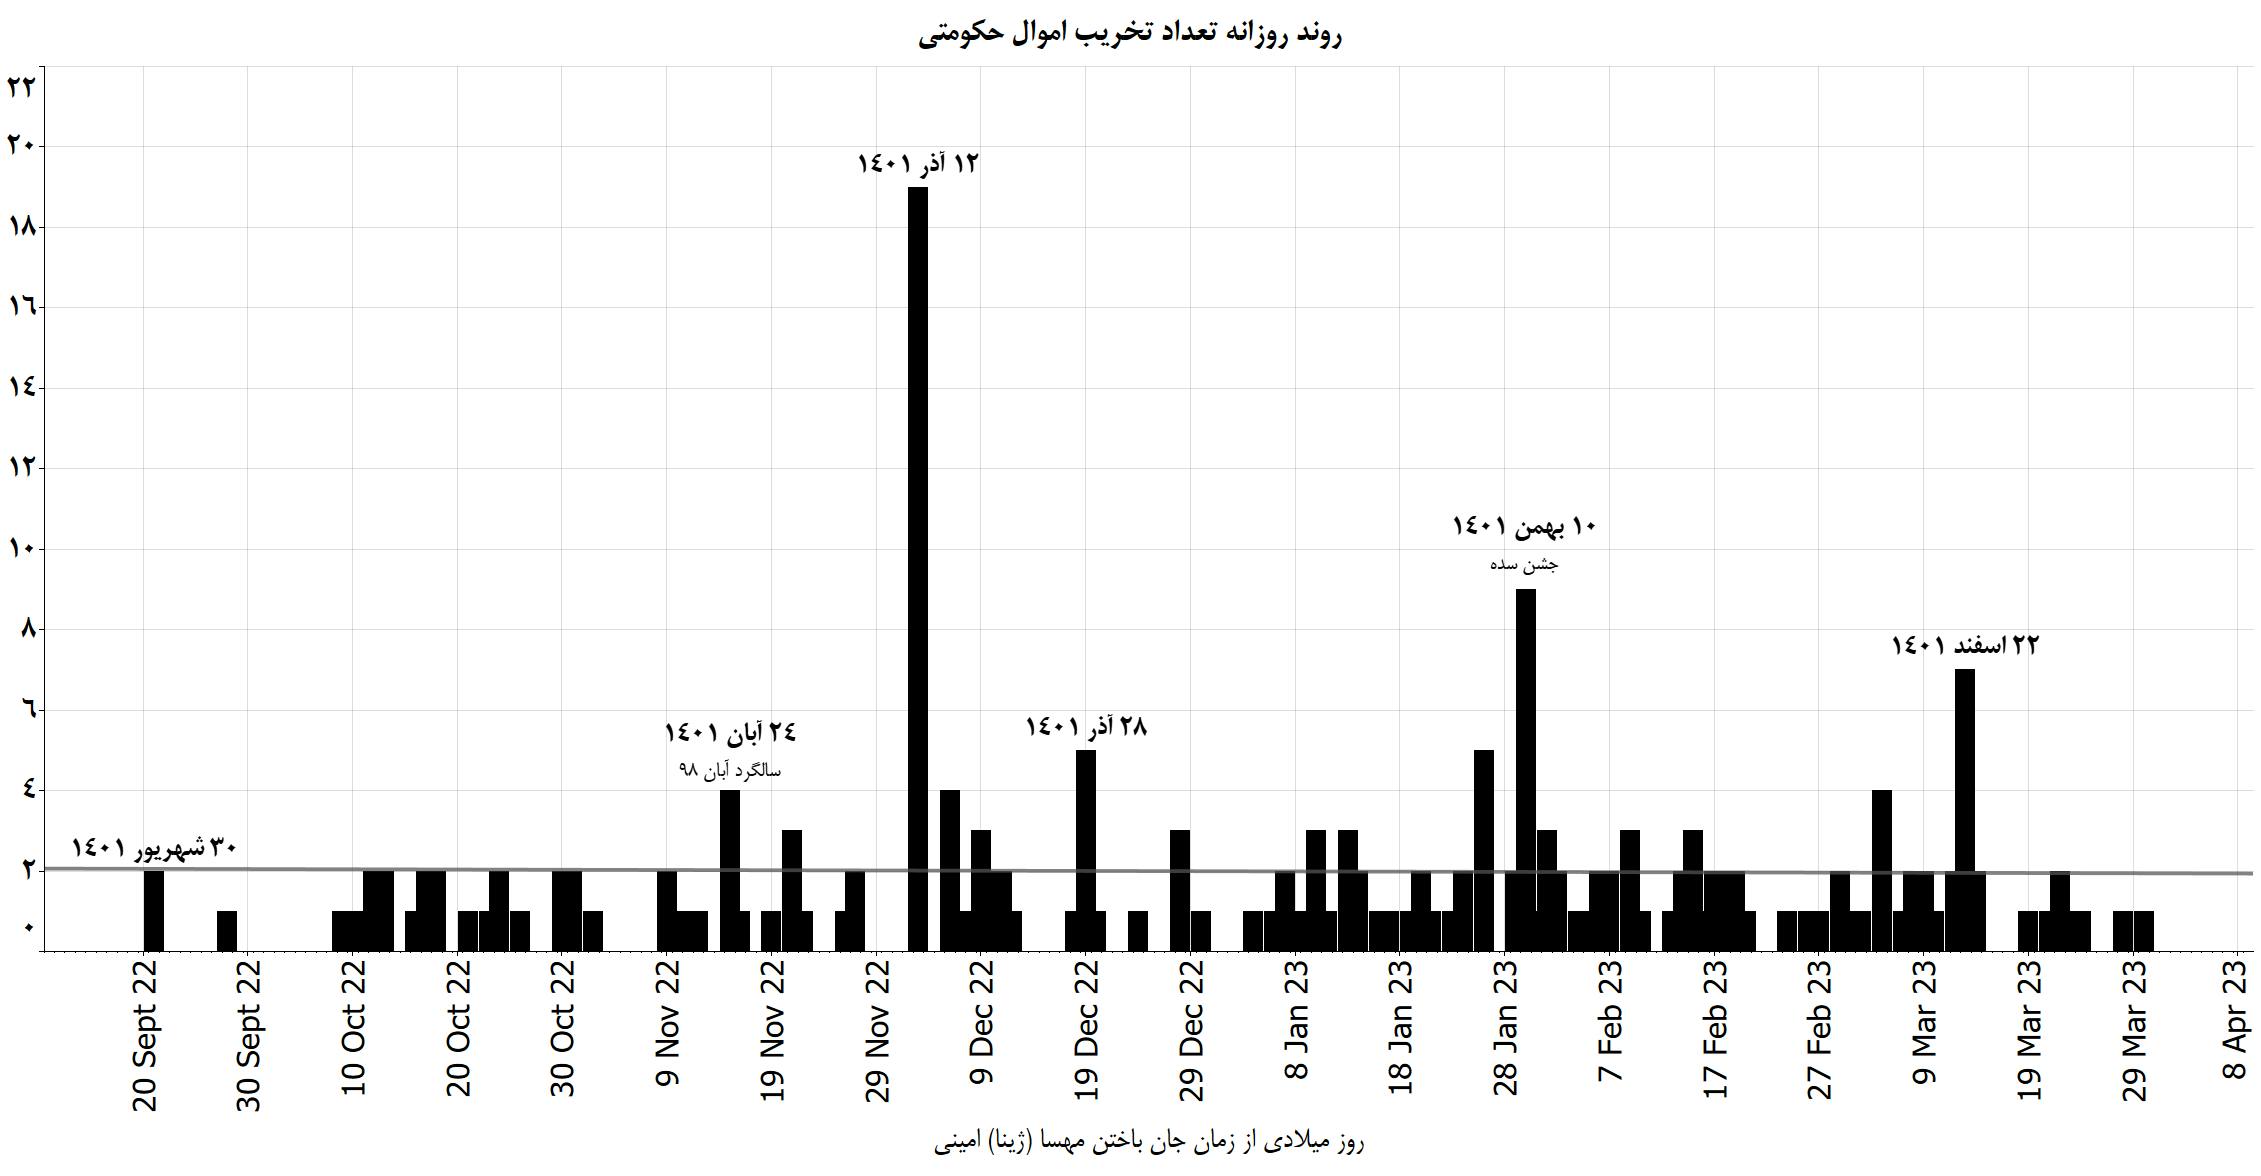 نمودار ده: روند روزانه تعداد تخریب اموال حکومتی ثبت شده در ۲۰۰ روز جنبش انقلابی مردم ایران